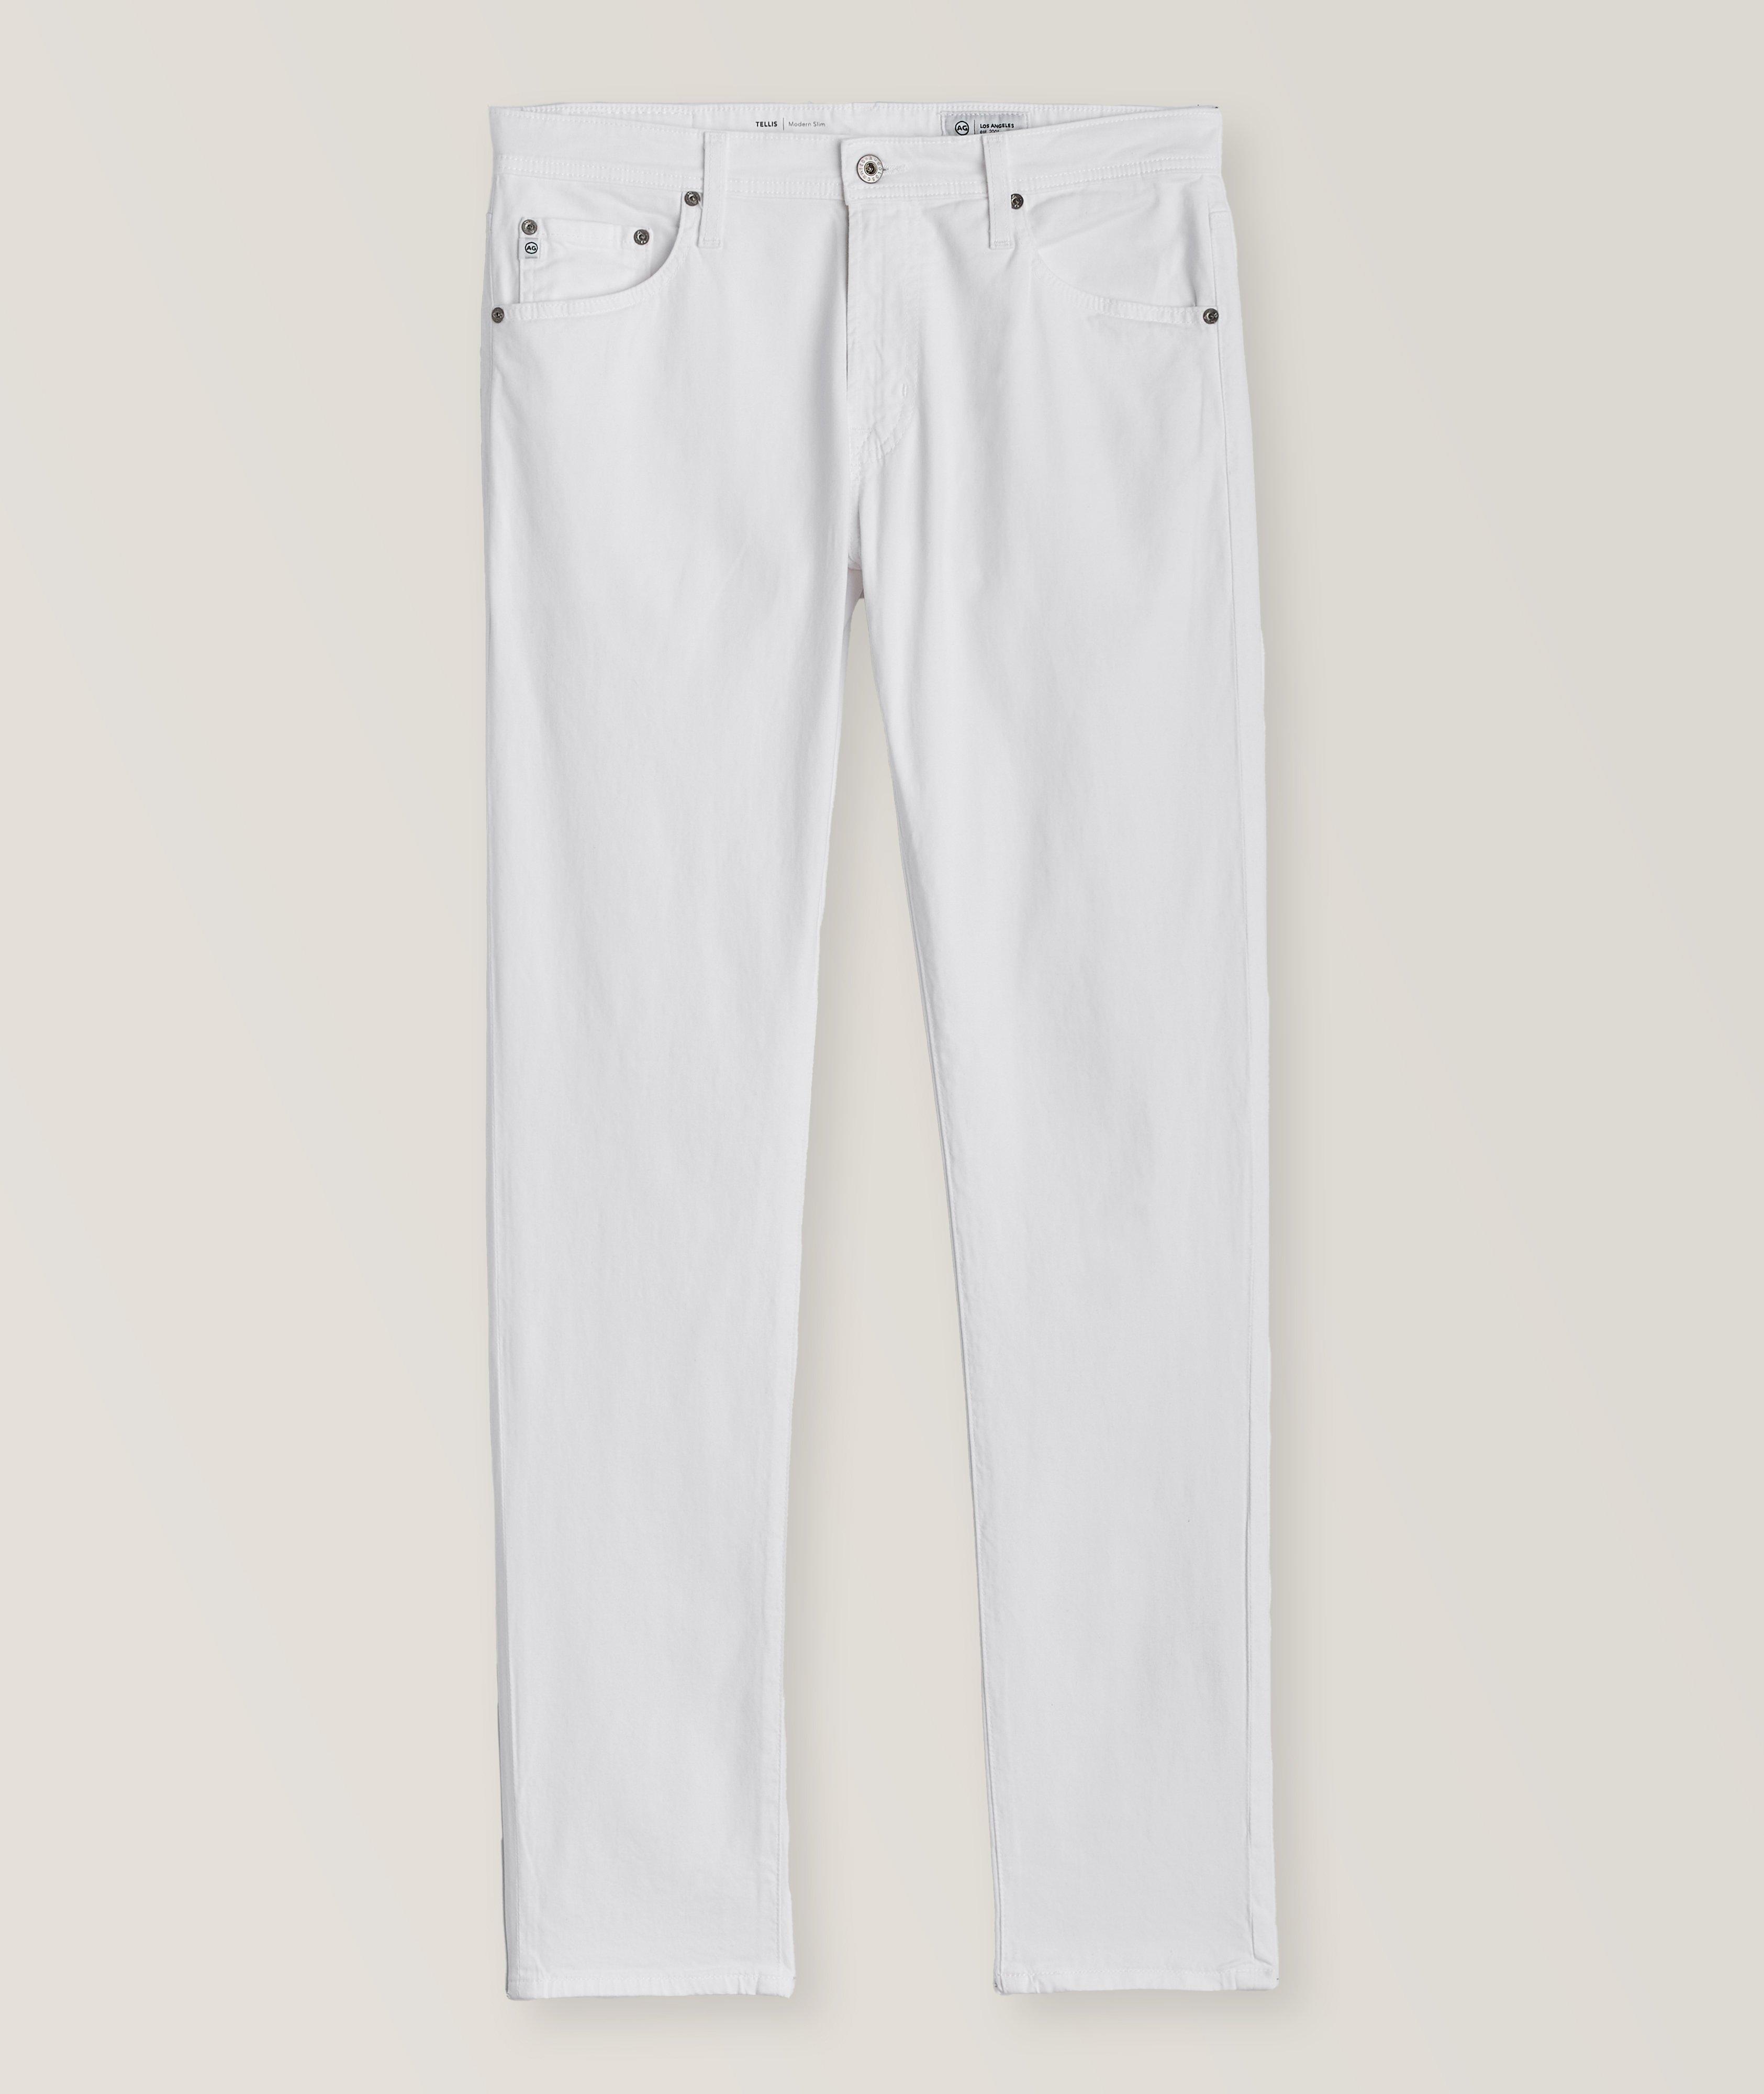 Pantalon Tellis en coton extensible de coupe moderne amincie image 0